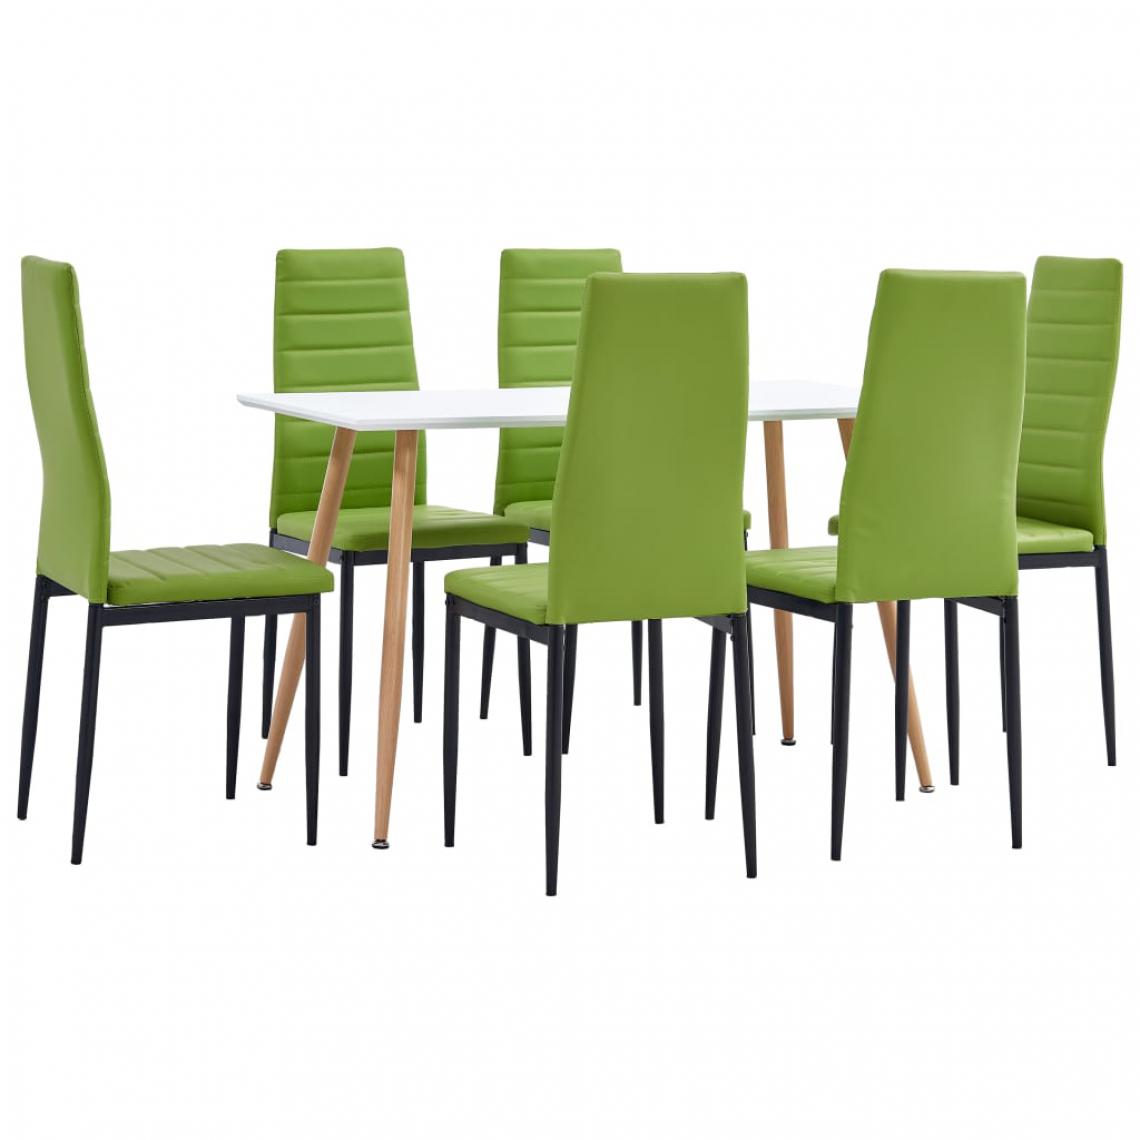 Chunhelife - Ensemble de salle à manger 7 pcs Similicuir Vert citron - Tables à manger